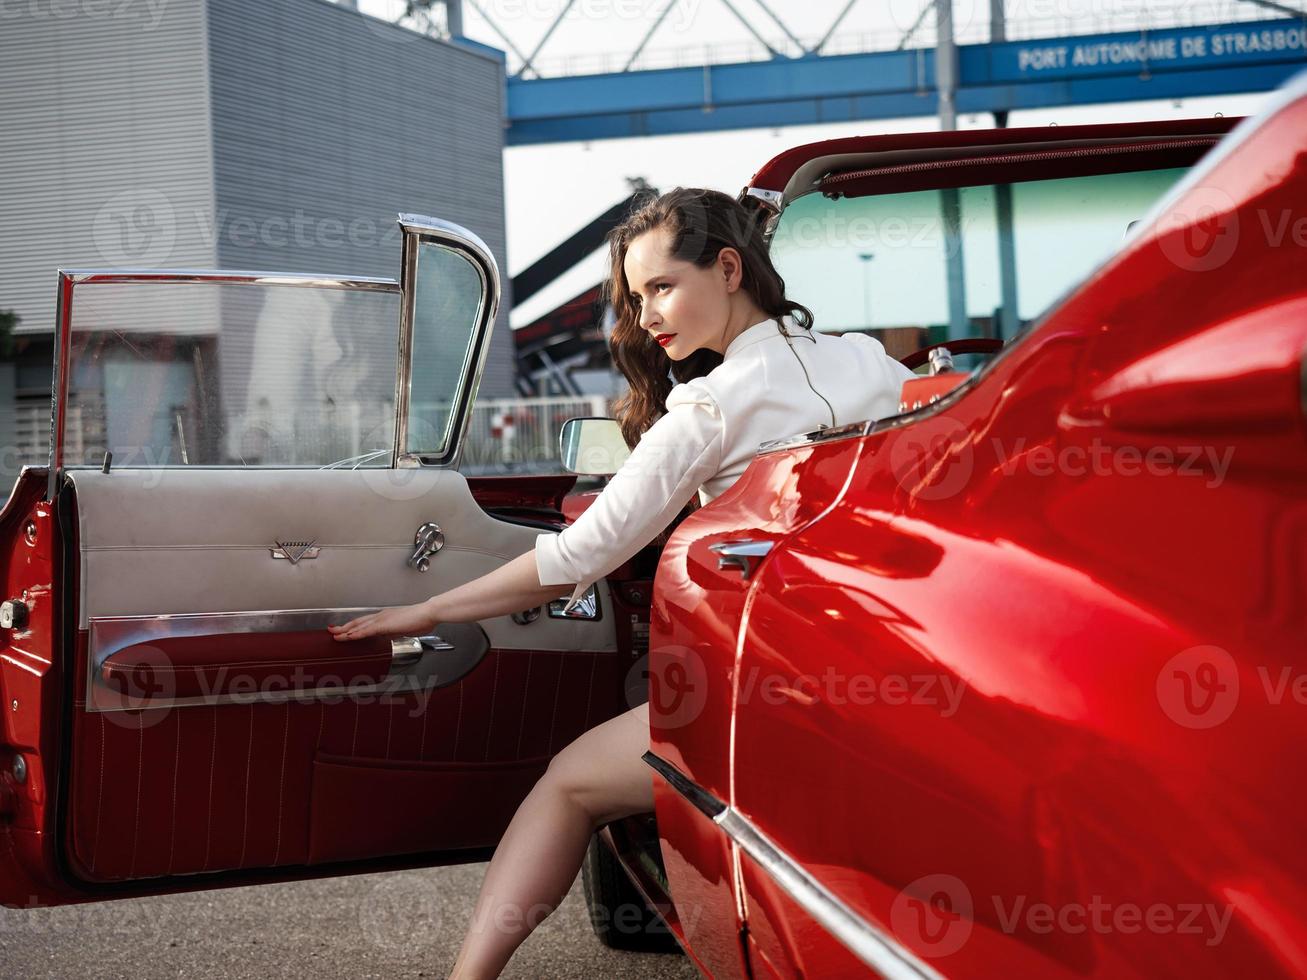 Cadillac rouge oldtimer des années 60 et une belle jeune fille photo